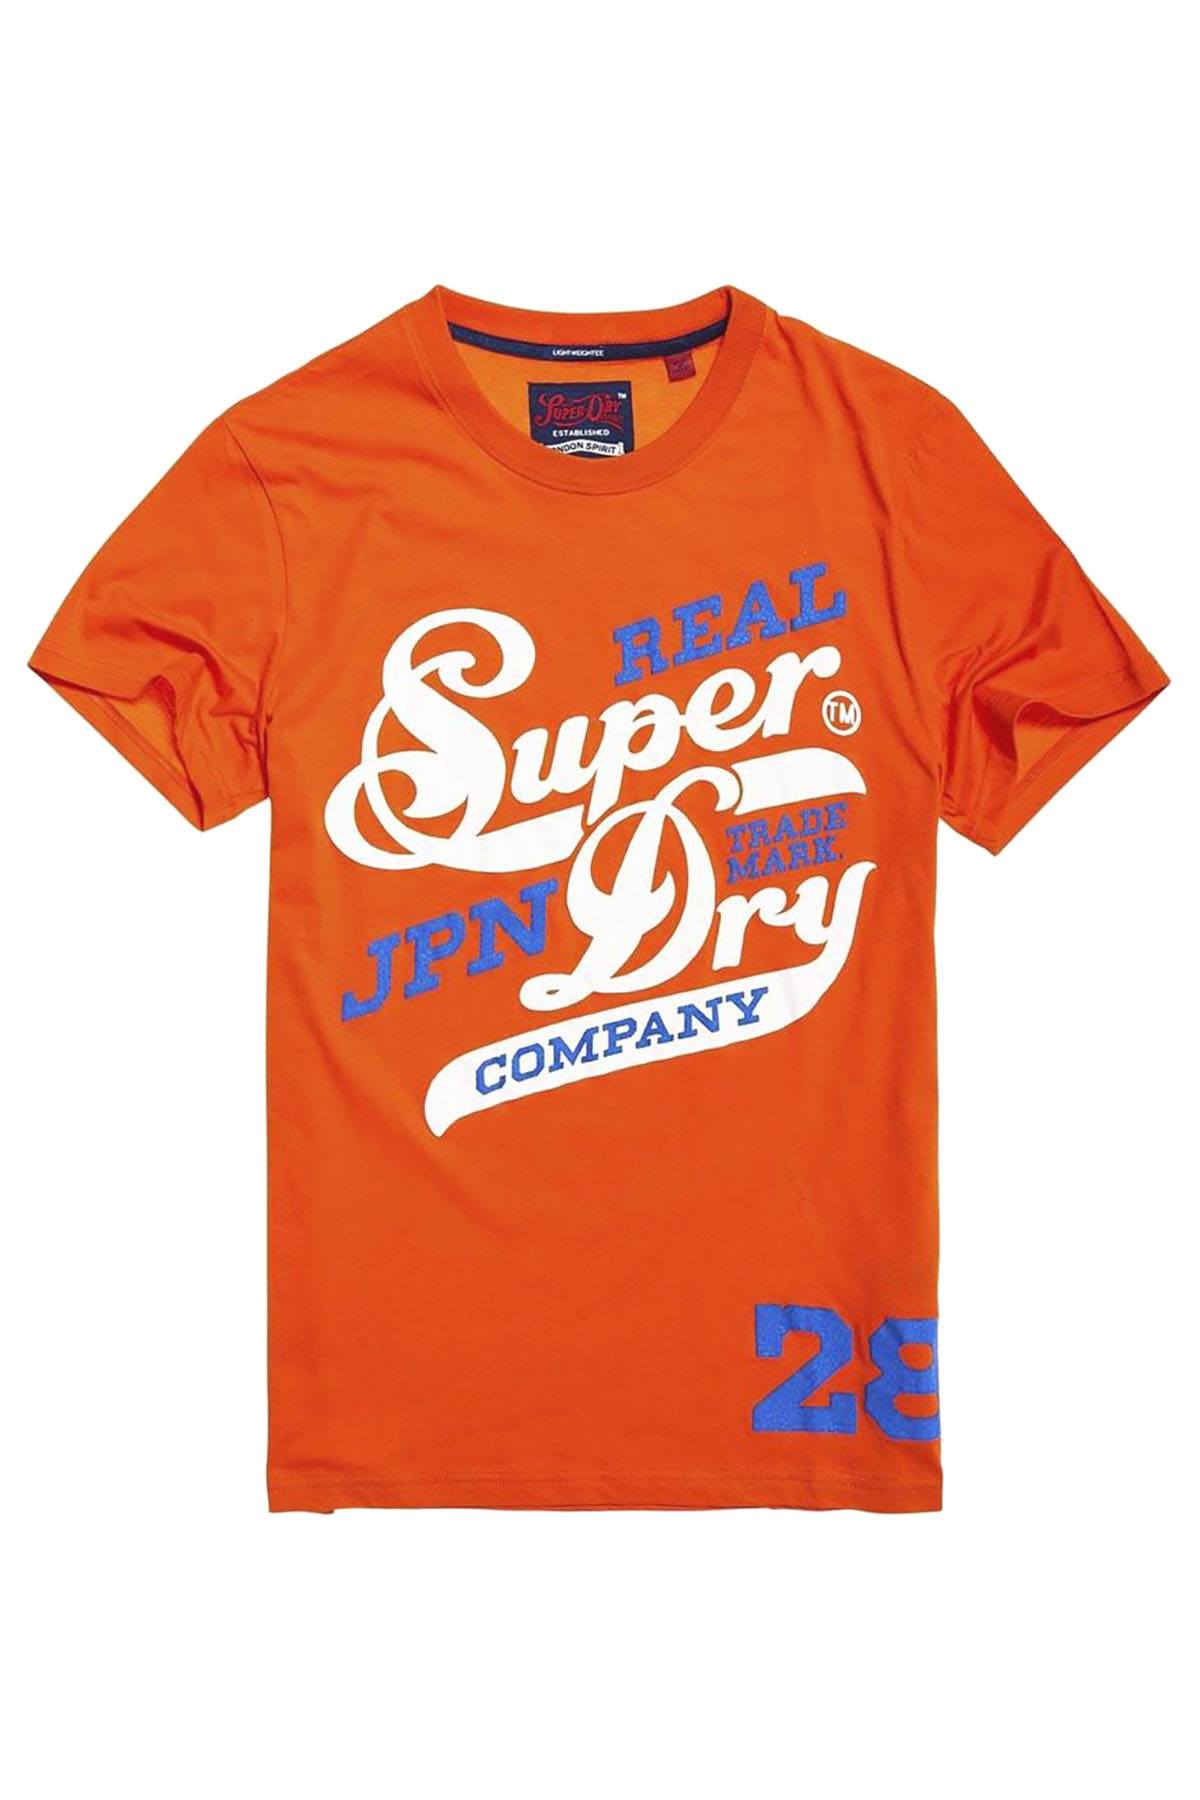 SuperDry Hacienda-Orange Original 77 Lite Weight T-Shirt